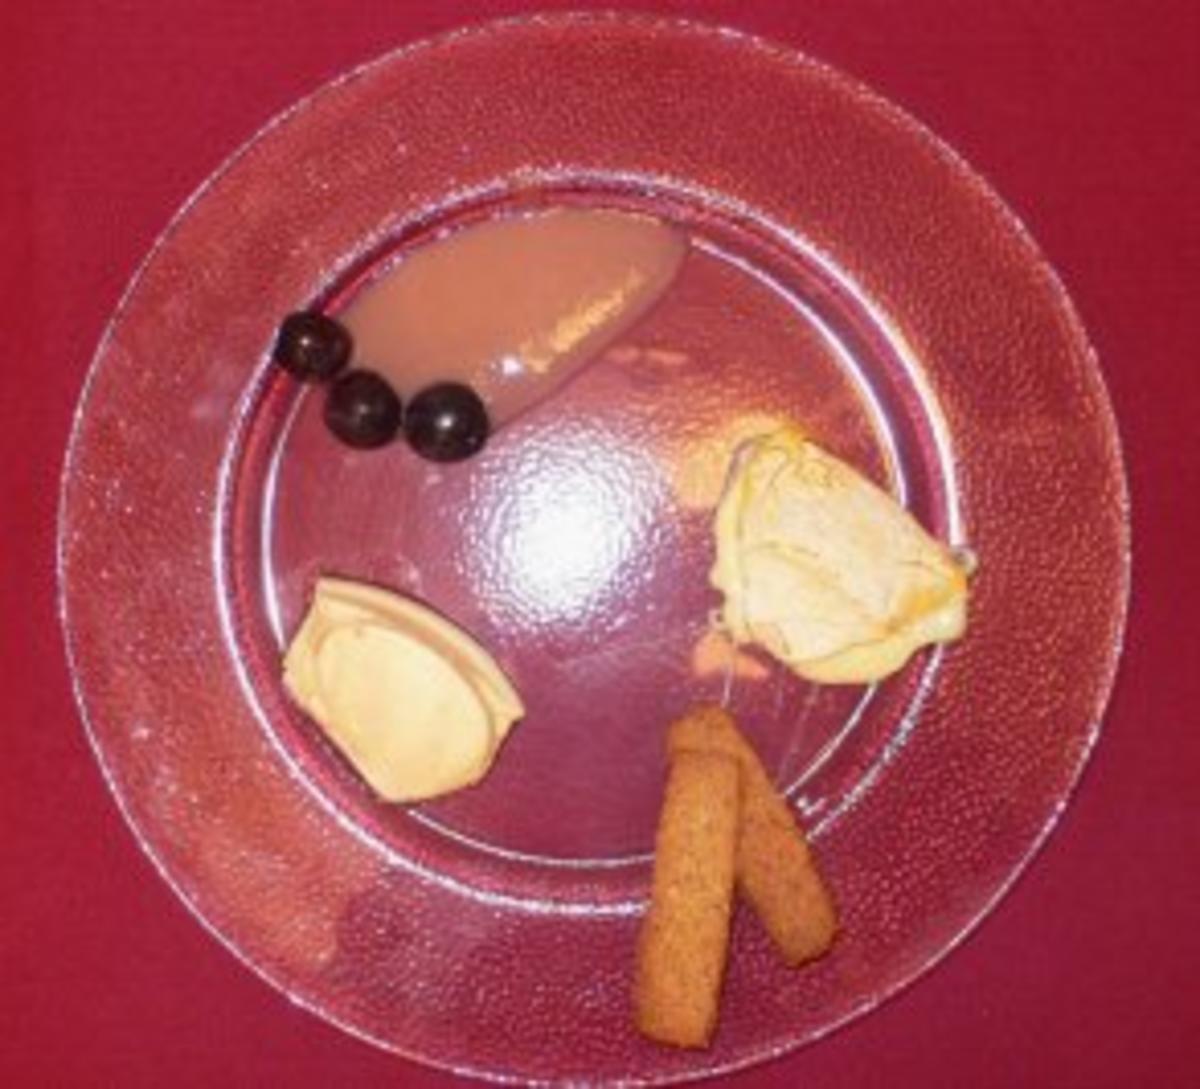 Reblochon auf Traubensoße, Perche Noisette und Nocken von Kir-Royal-Creme - Rezept - Bild Nr. 2